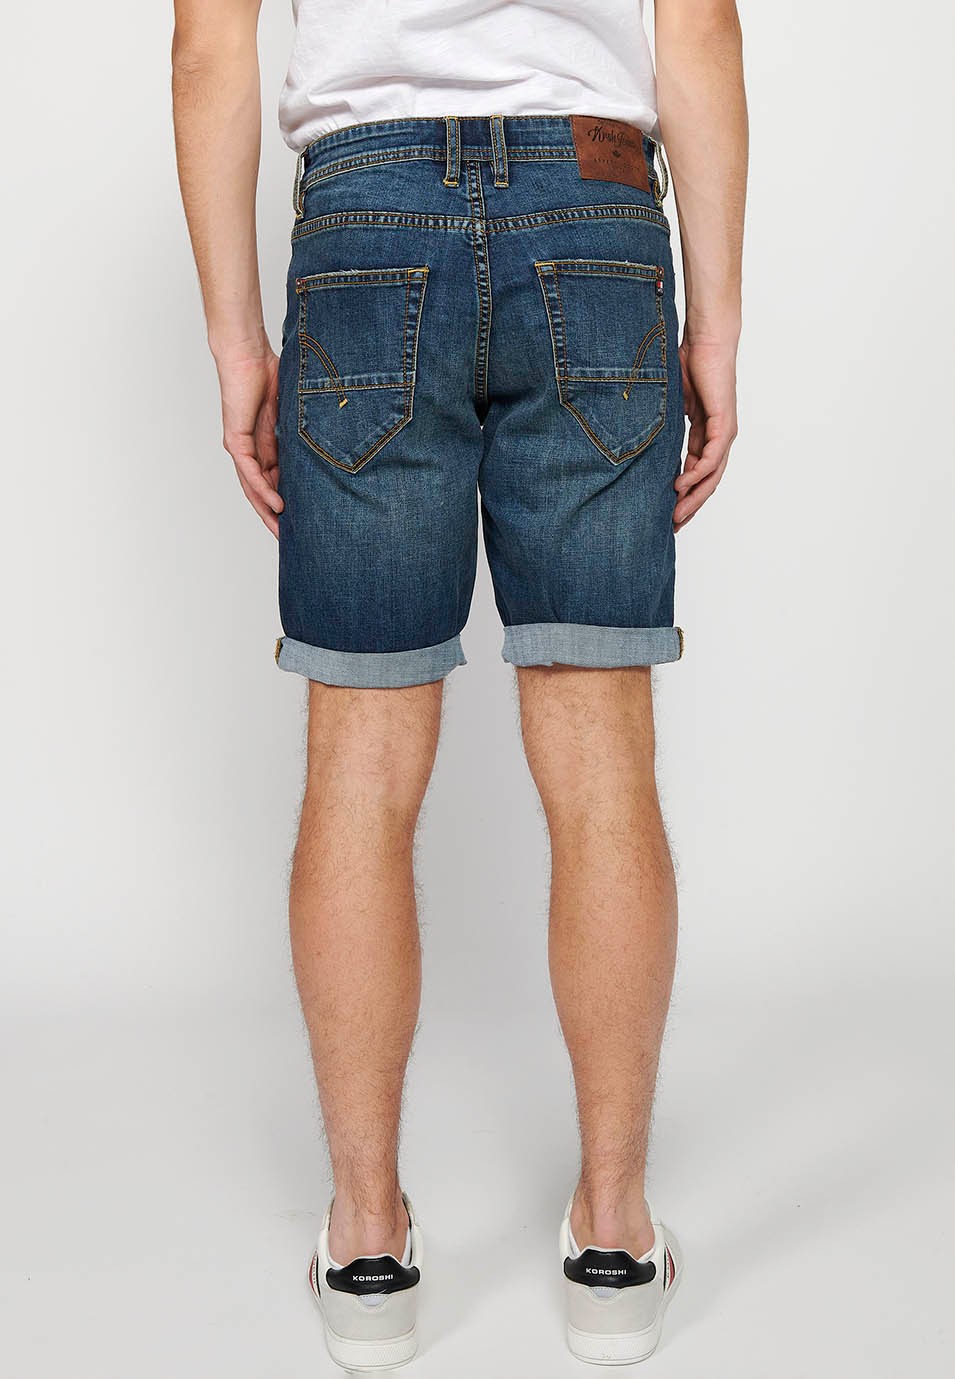 Bermuda en jean avec fermeture éclair sur le devant et fermeture boutonnée avec cinq poches, une poche bleue pour homme 2